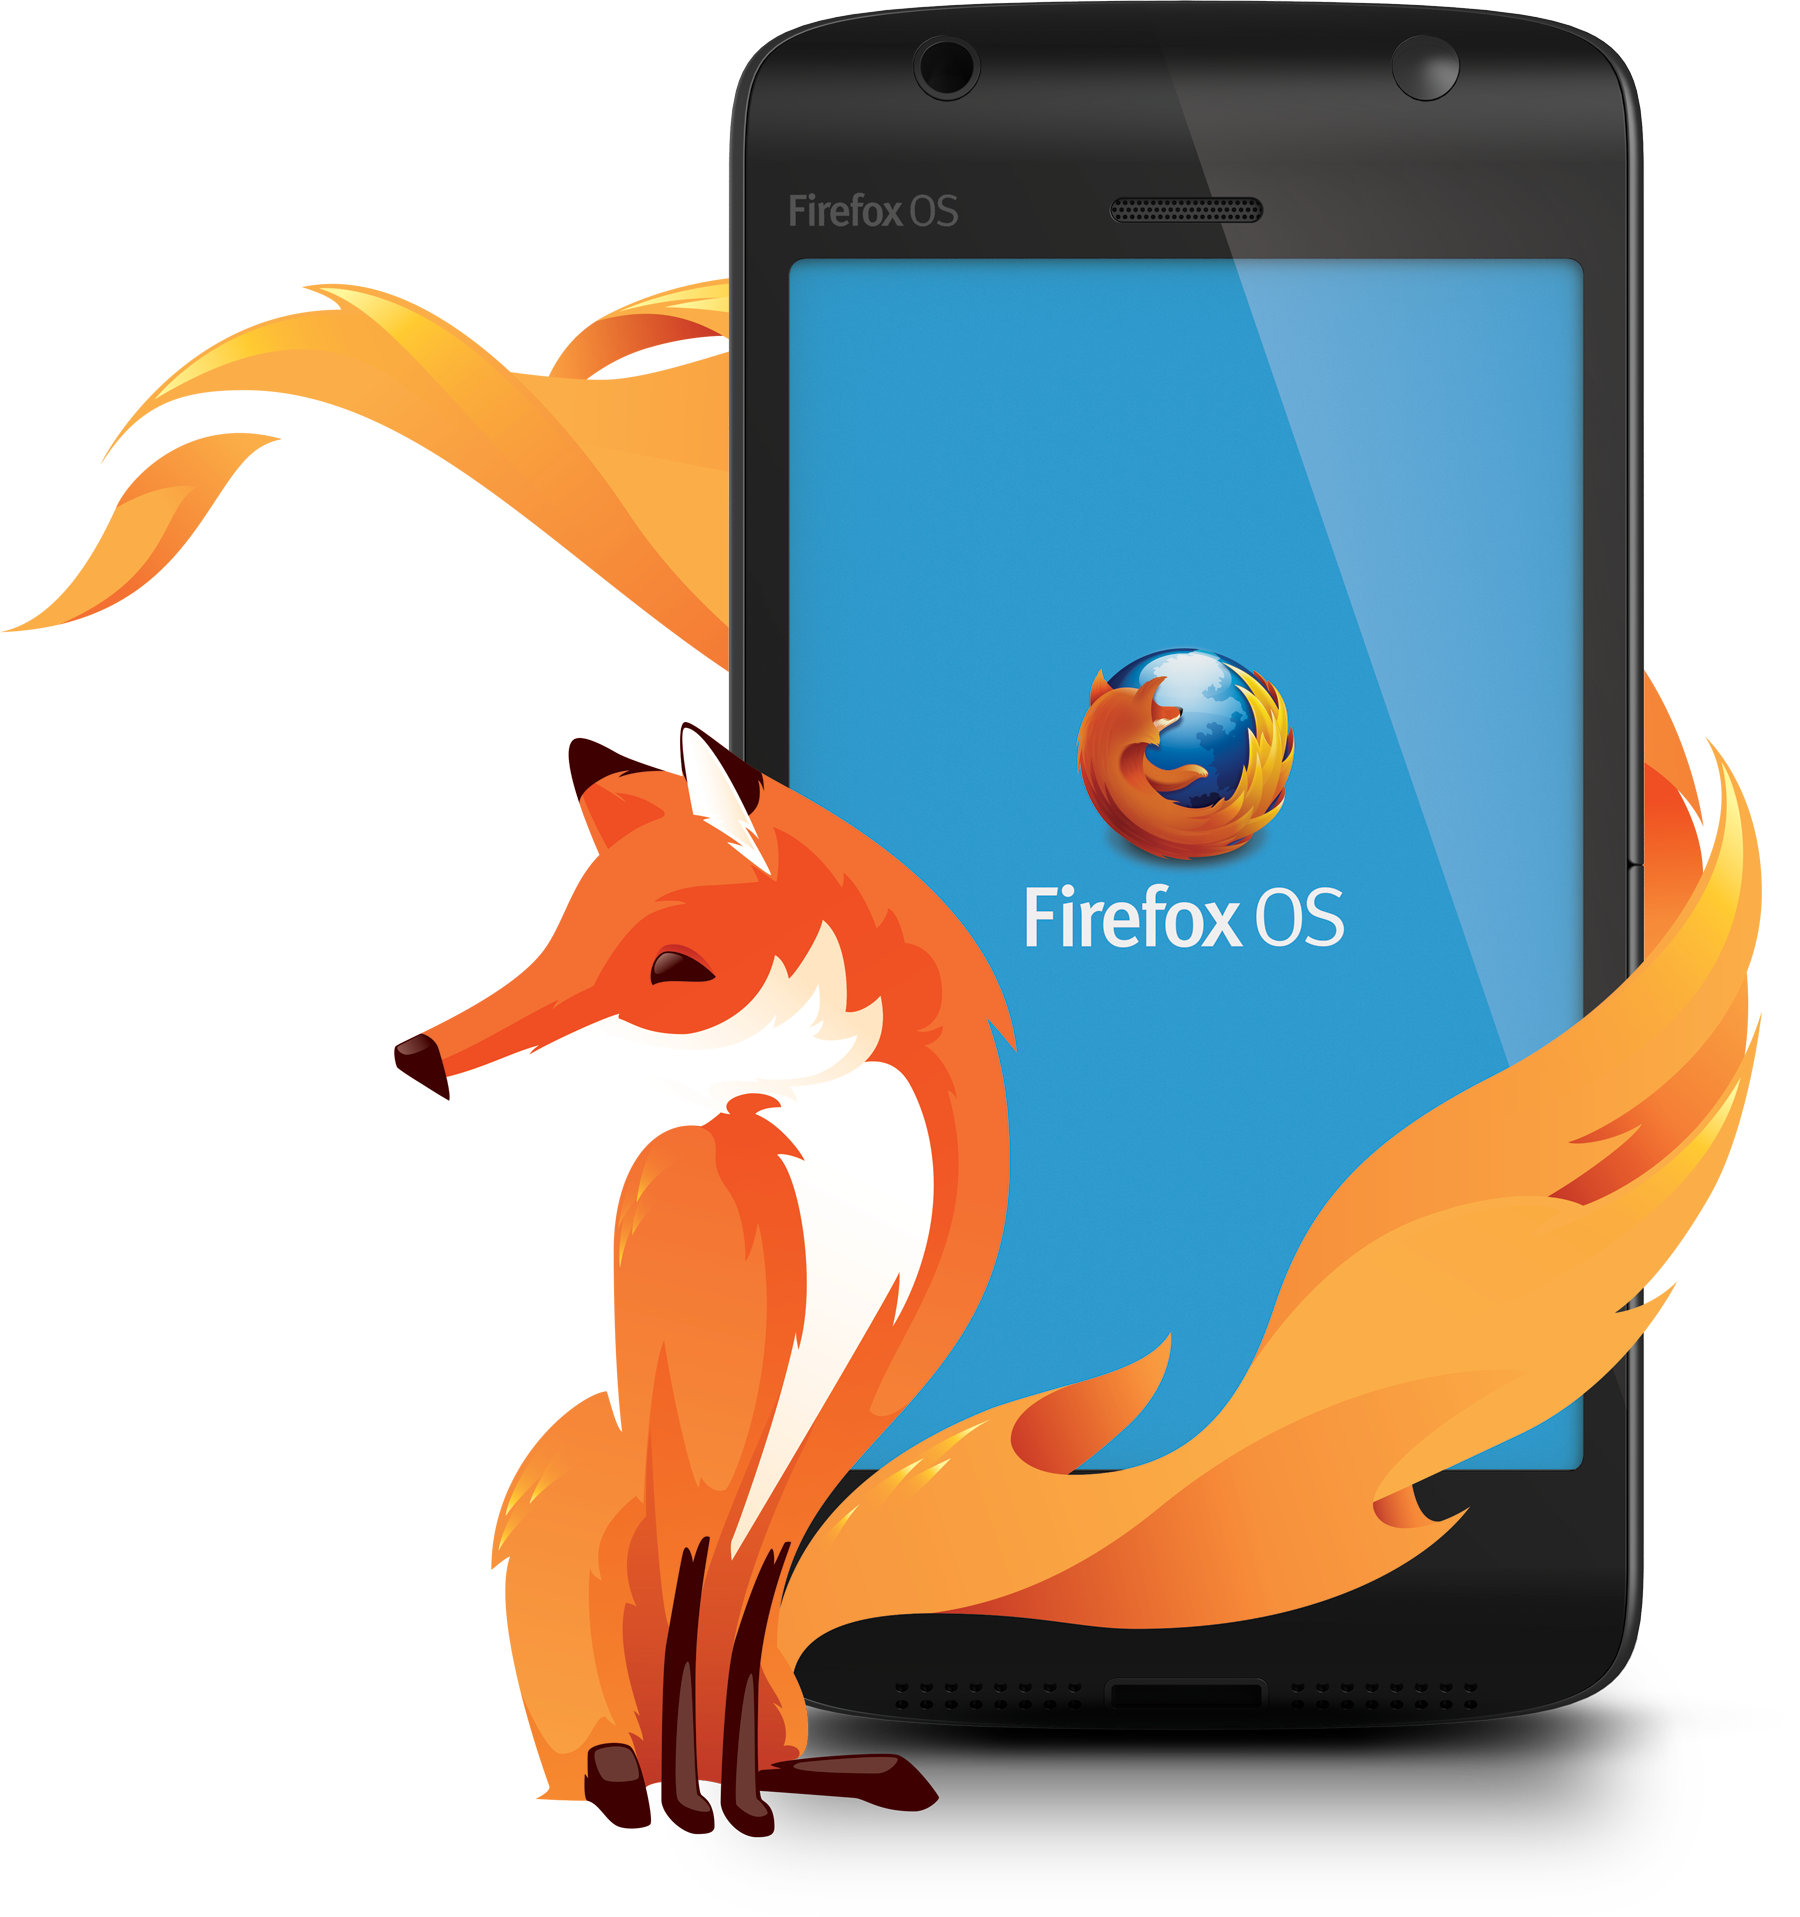  Imagen >>Firefox OS<<